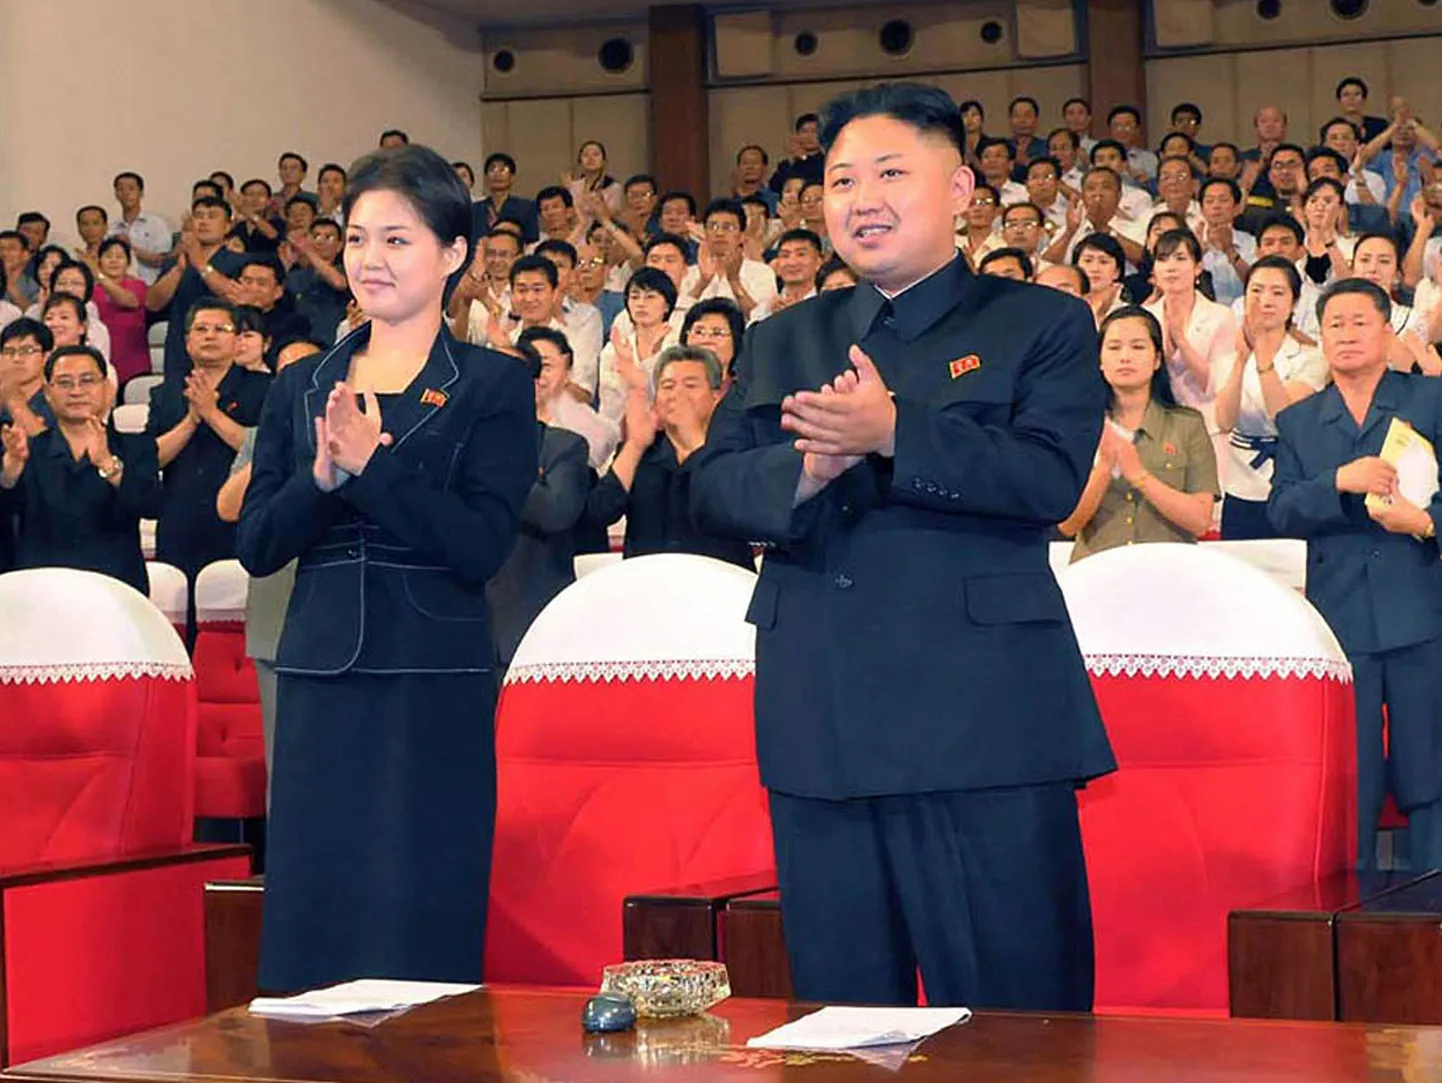 Северокорейский лидер Ким Чен Ын появляется на публике в сопровождении женщины.